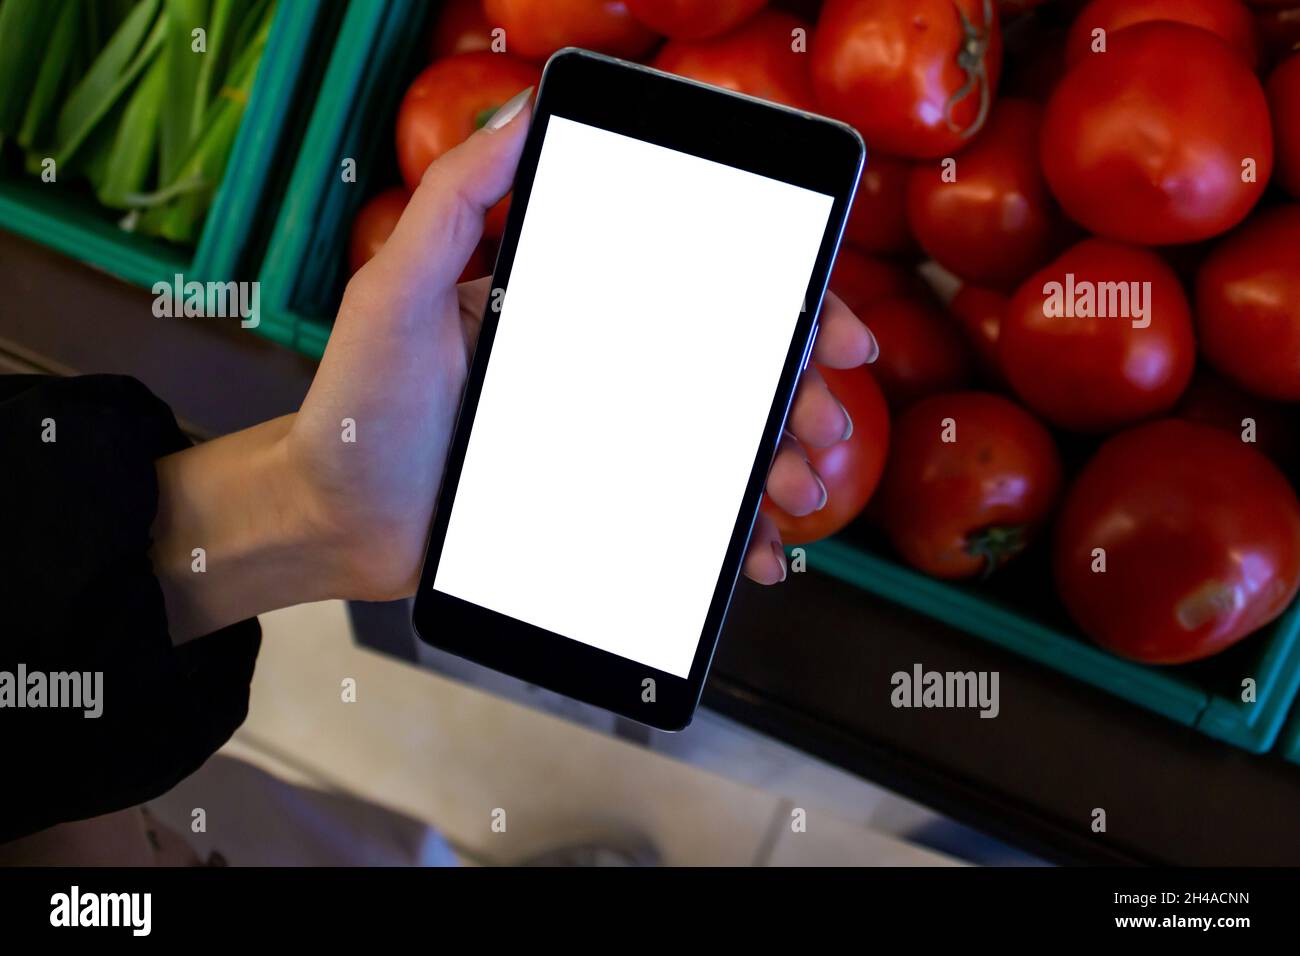 Mujer usando el teléfono móvil, burla imagen de la mano femenina sosteniendo el teléfono móvil con pantalla blanca en blanco en las compras. Foto de stock